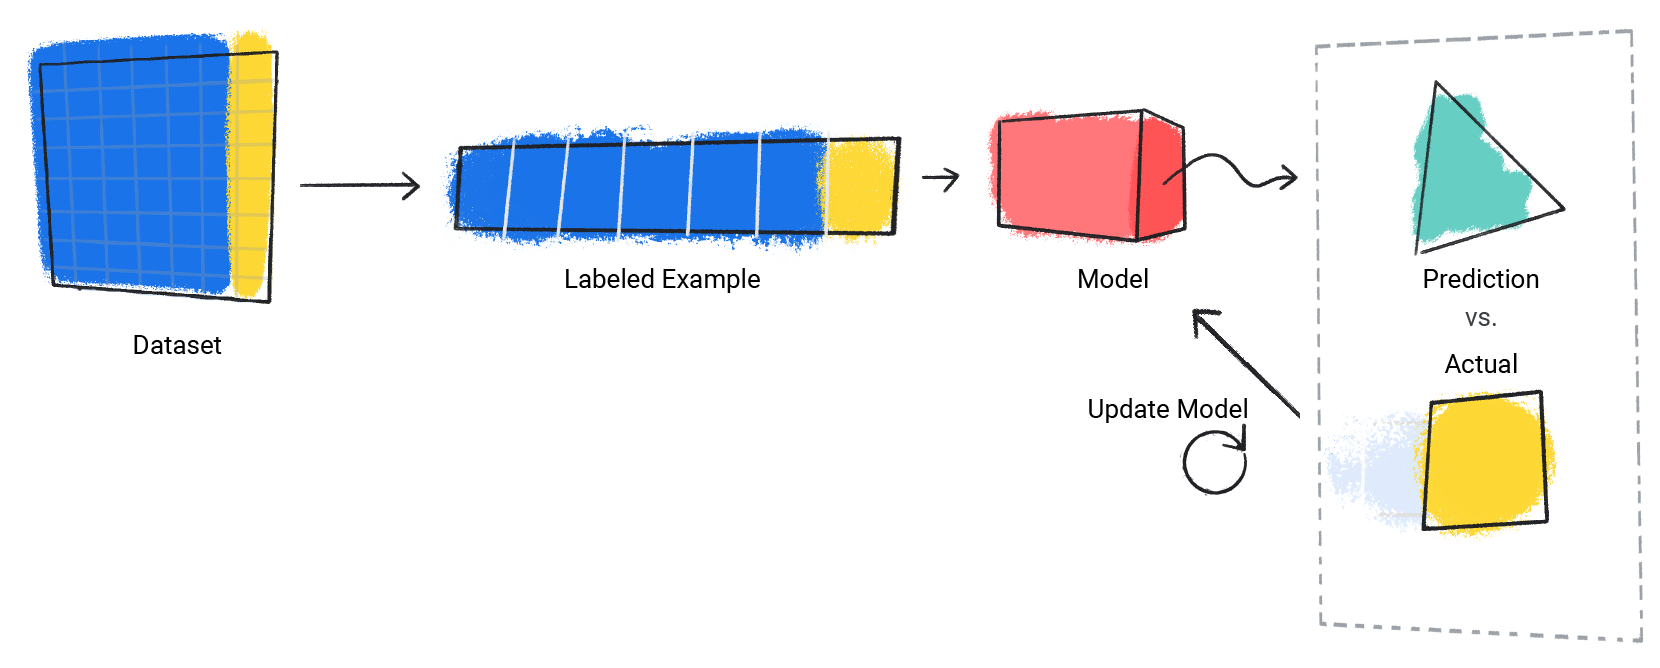 显示模型重复预测过程与实际值的图像。